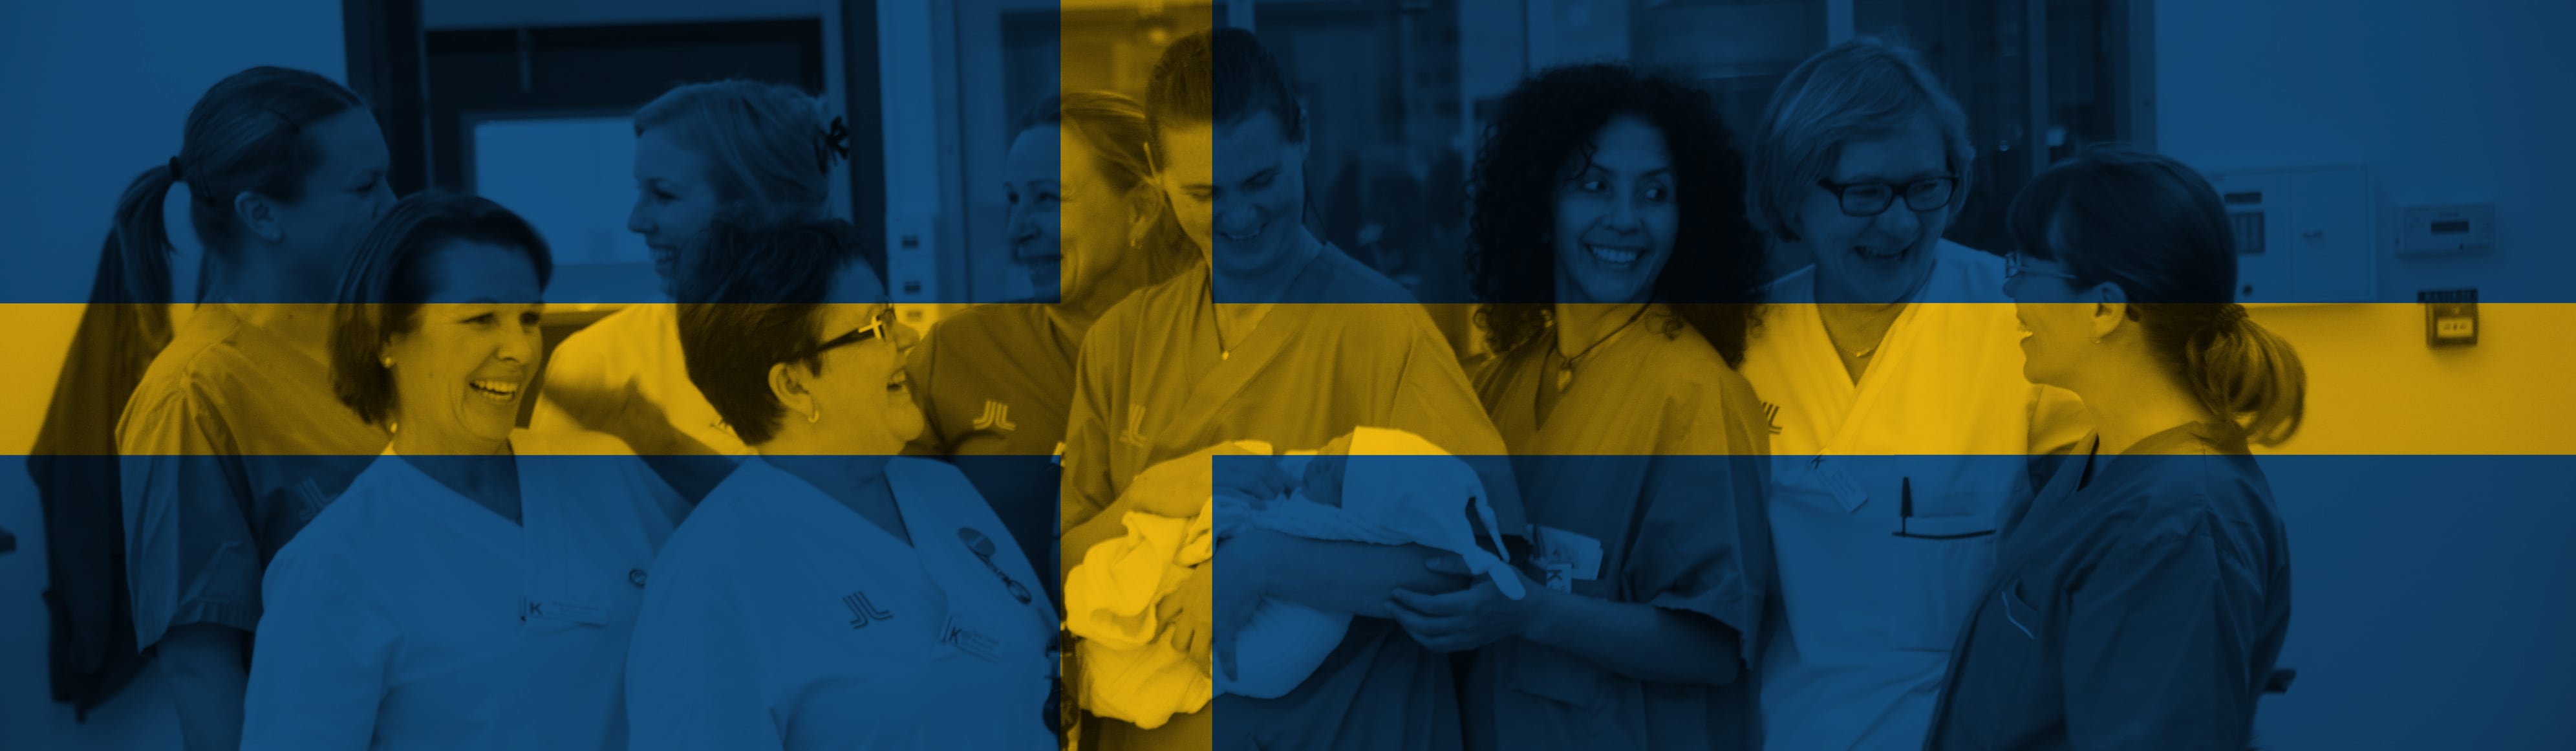 Szwedzkie lekarki, ginekolożki i położne należące do stowarzyszenia Vårdförbundet (the Swedish Association of Health Professionals) stoją razem uśmiechając się do siebie.